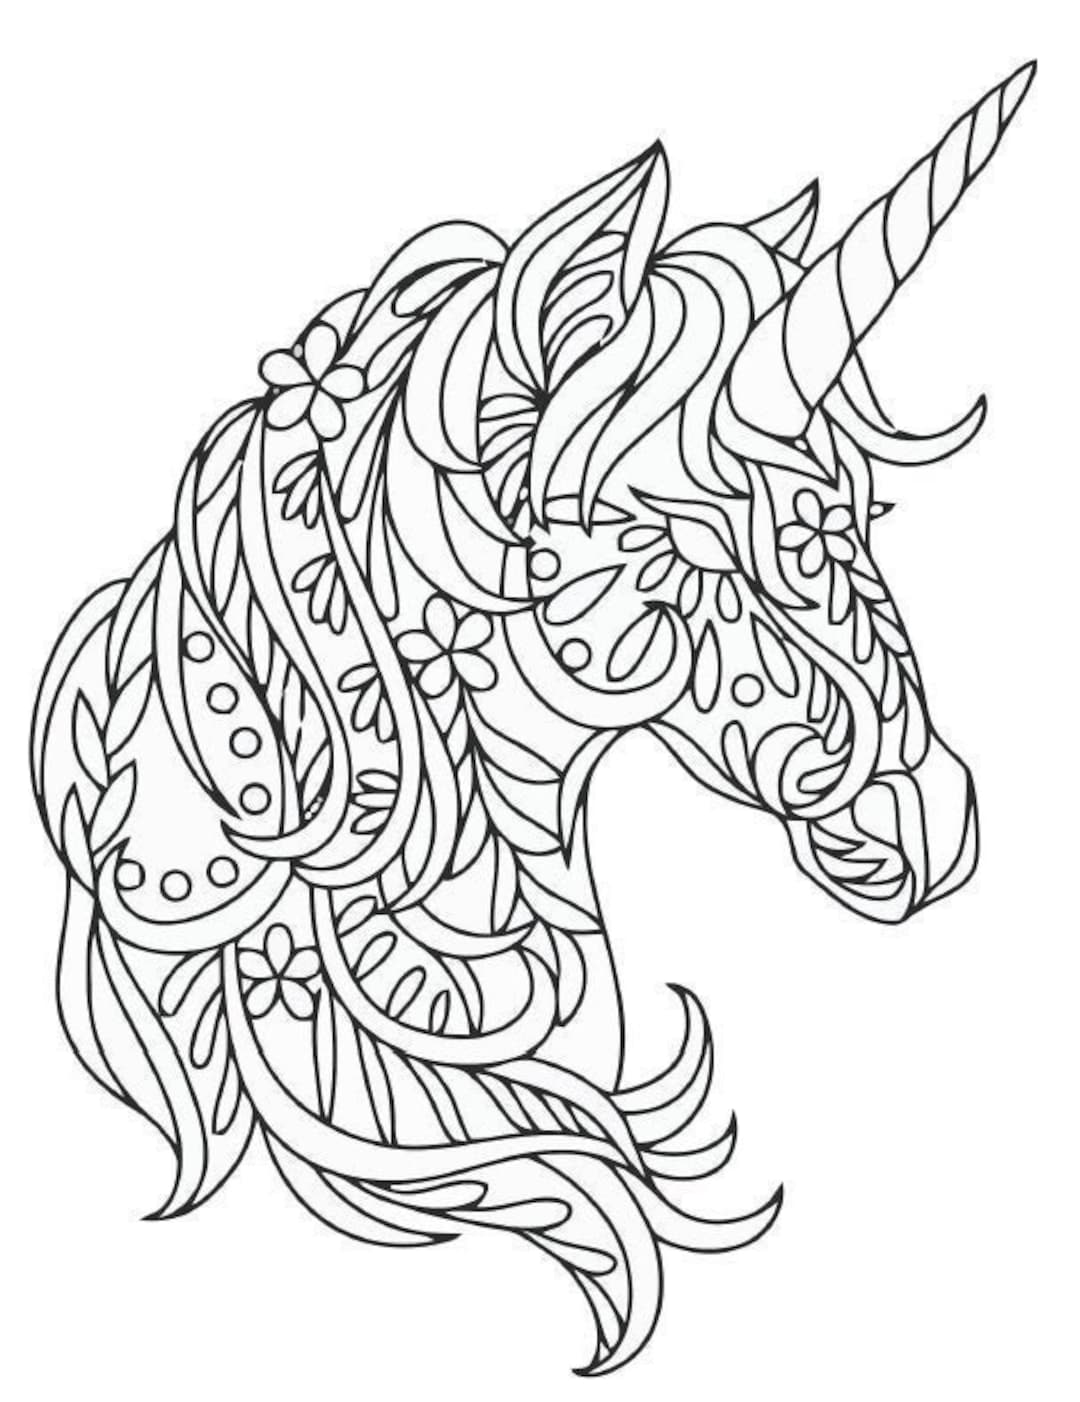 Unicorn Mandala Coloring Page - Etsy